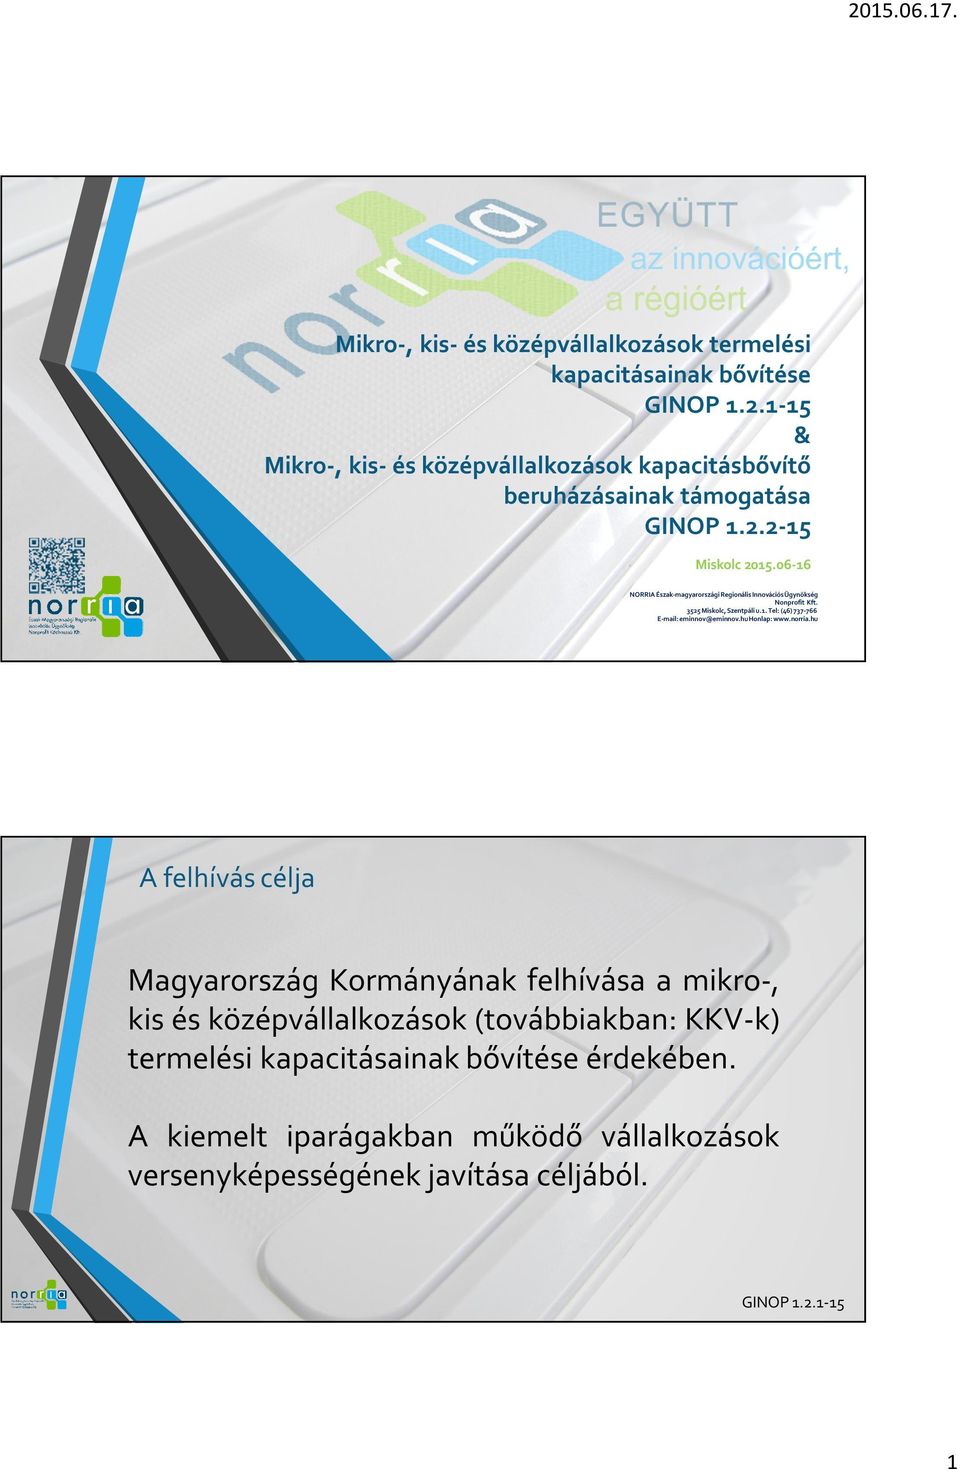 támogatása Miskolc 2015.06-16 NORRIA Észak-magyarországi Regionális Innovációs Ügynökség Nonprofit Kft. 3525 Miskolc, Szentpáli u.1. Tel: (46) 737-766 E-mail: eminnov@eminnov.